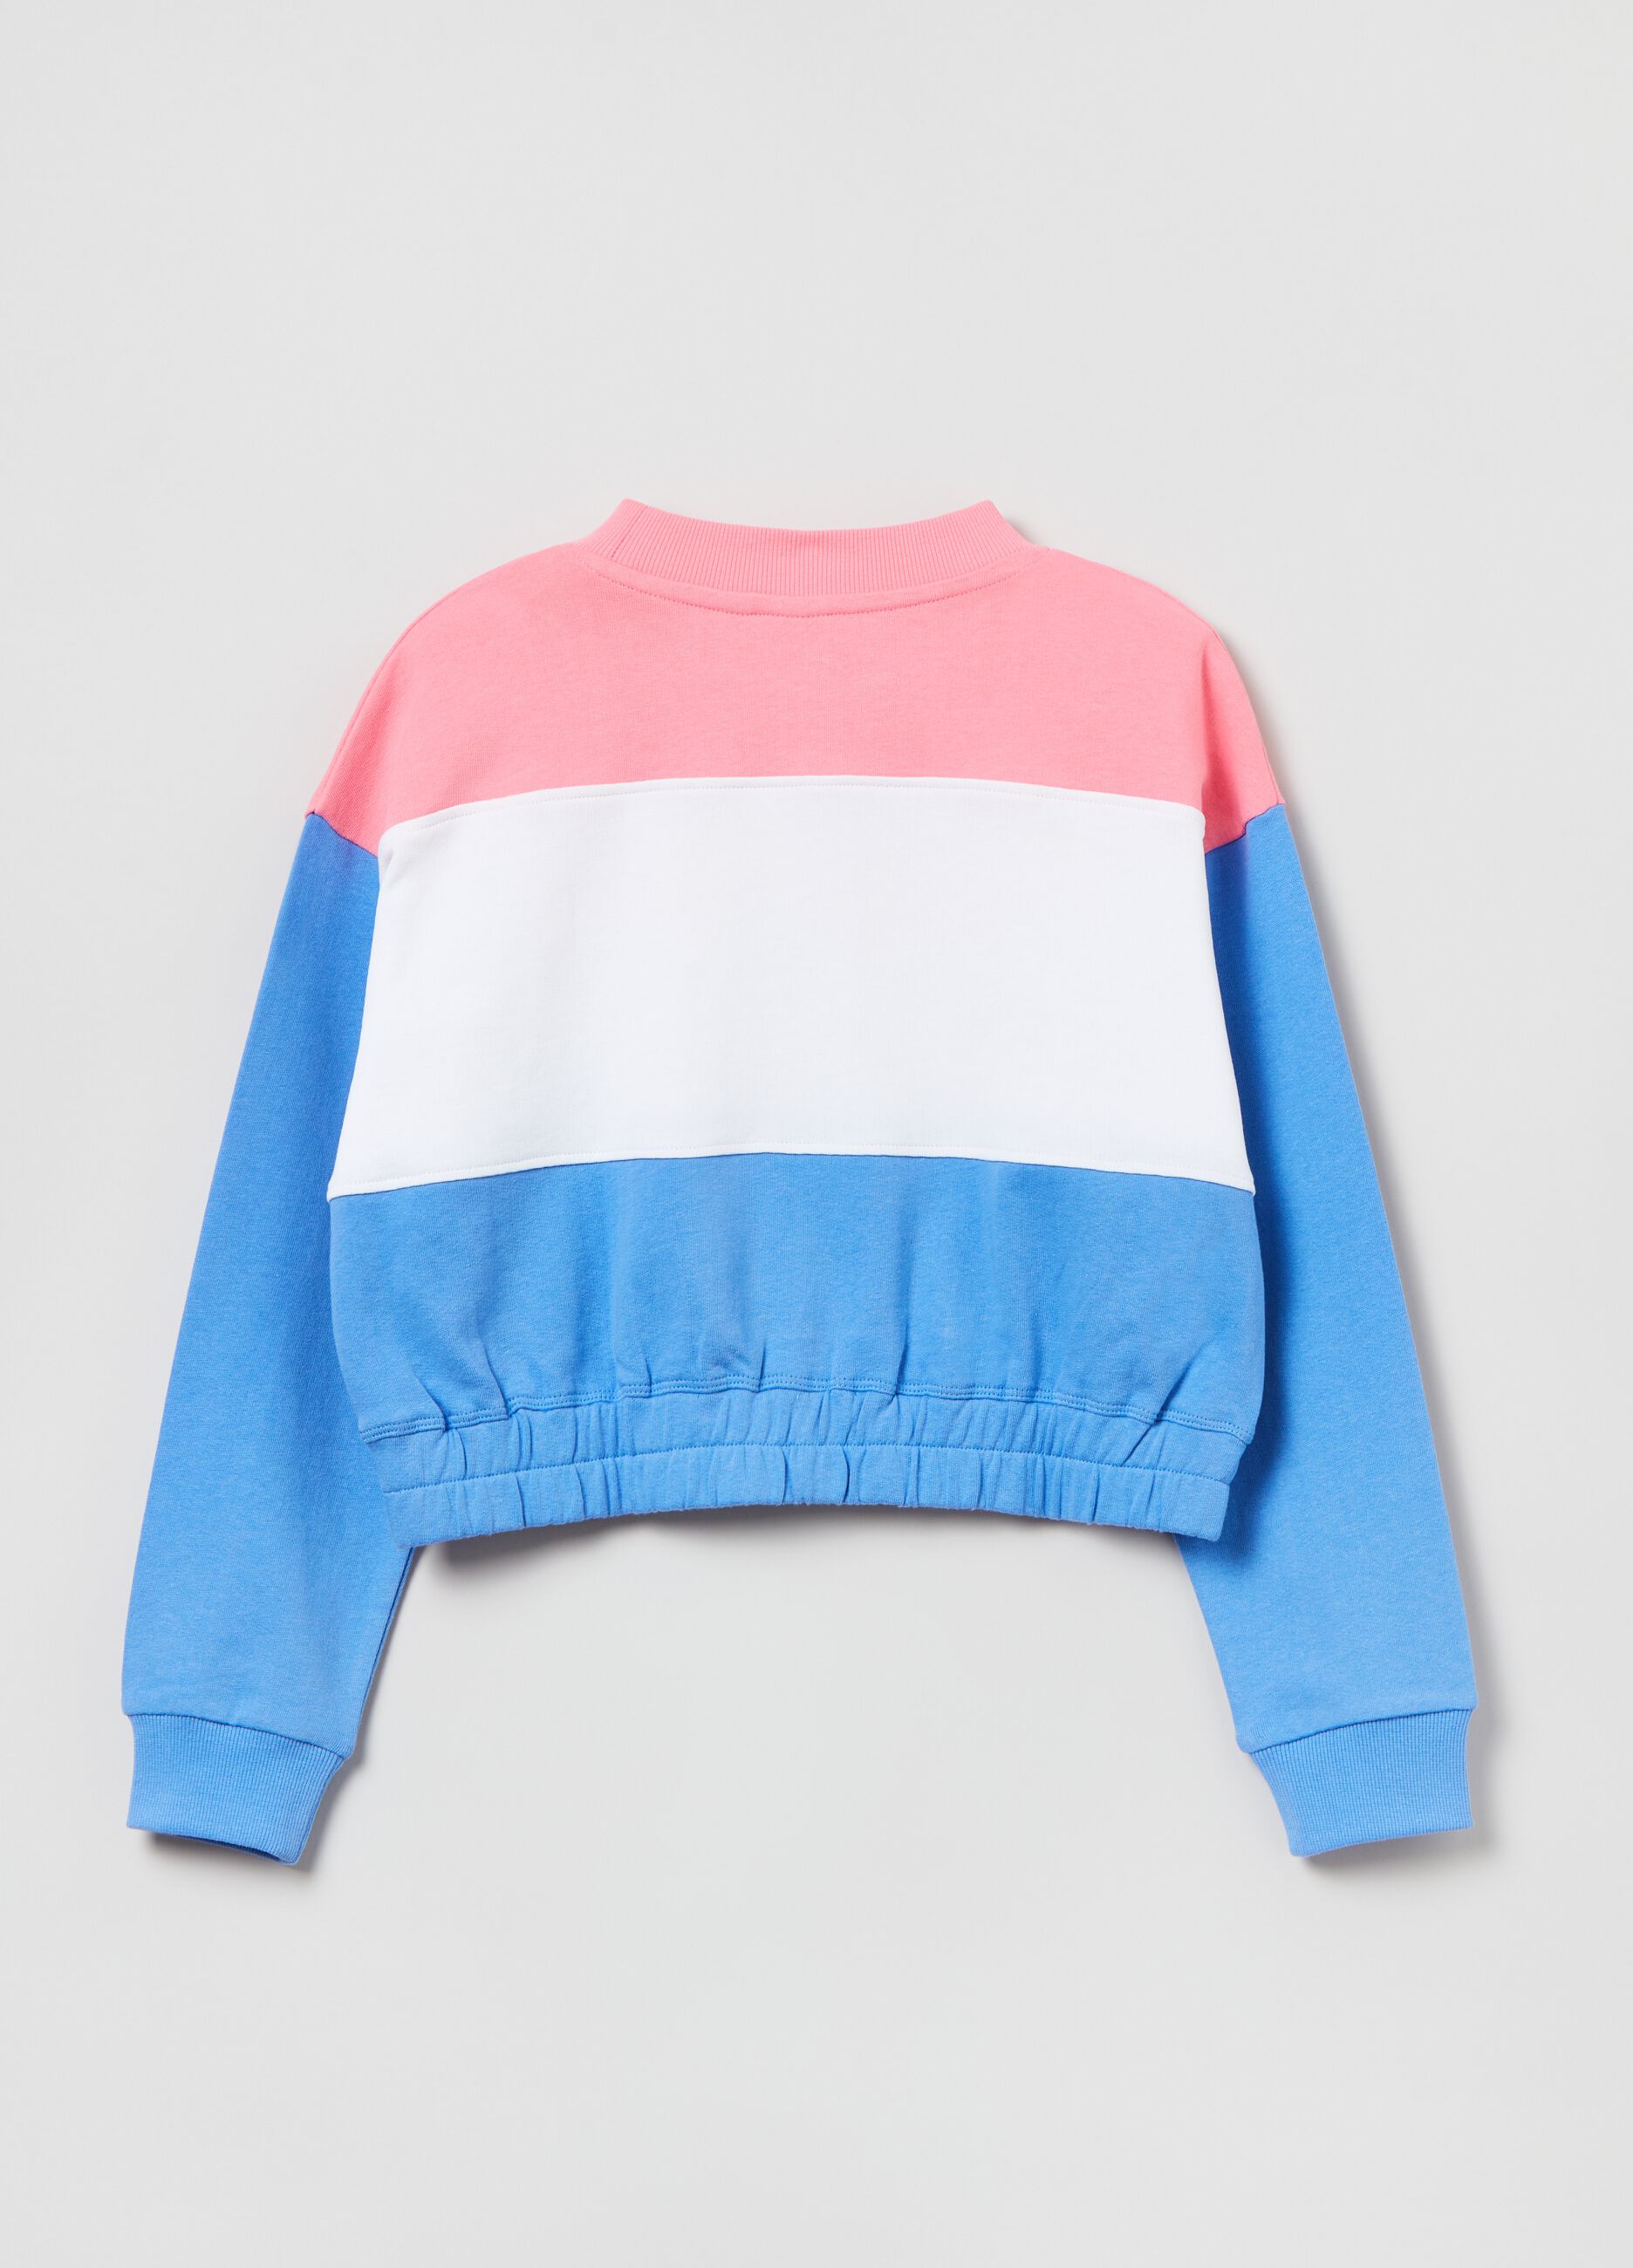 Everlast colourblock cotton sweatshirt